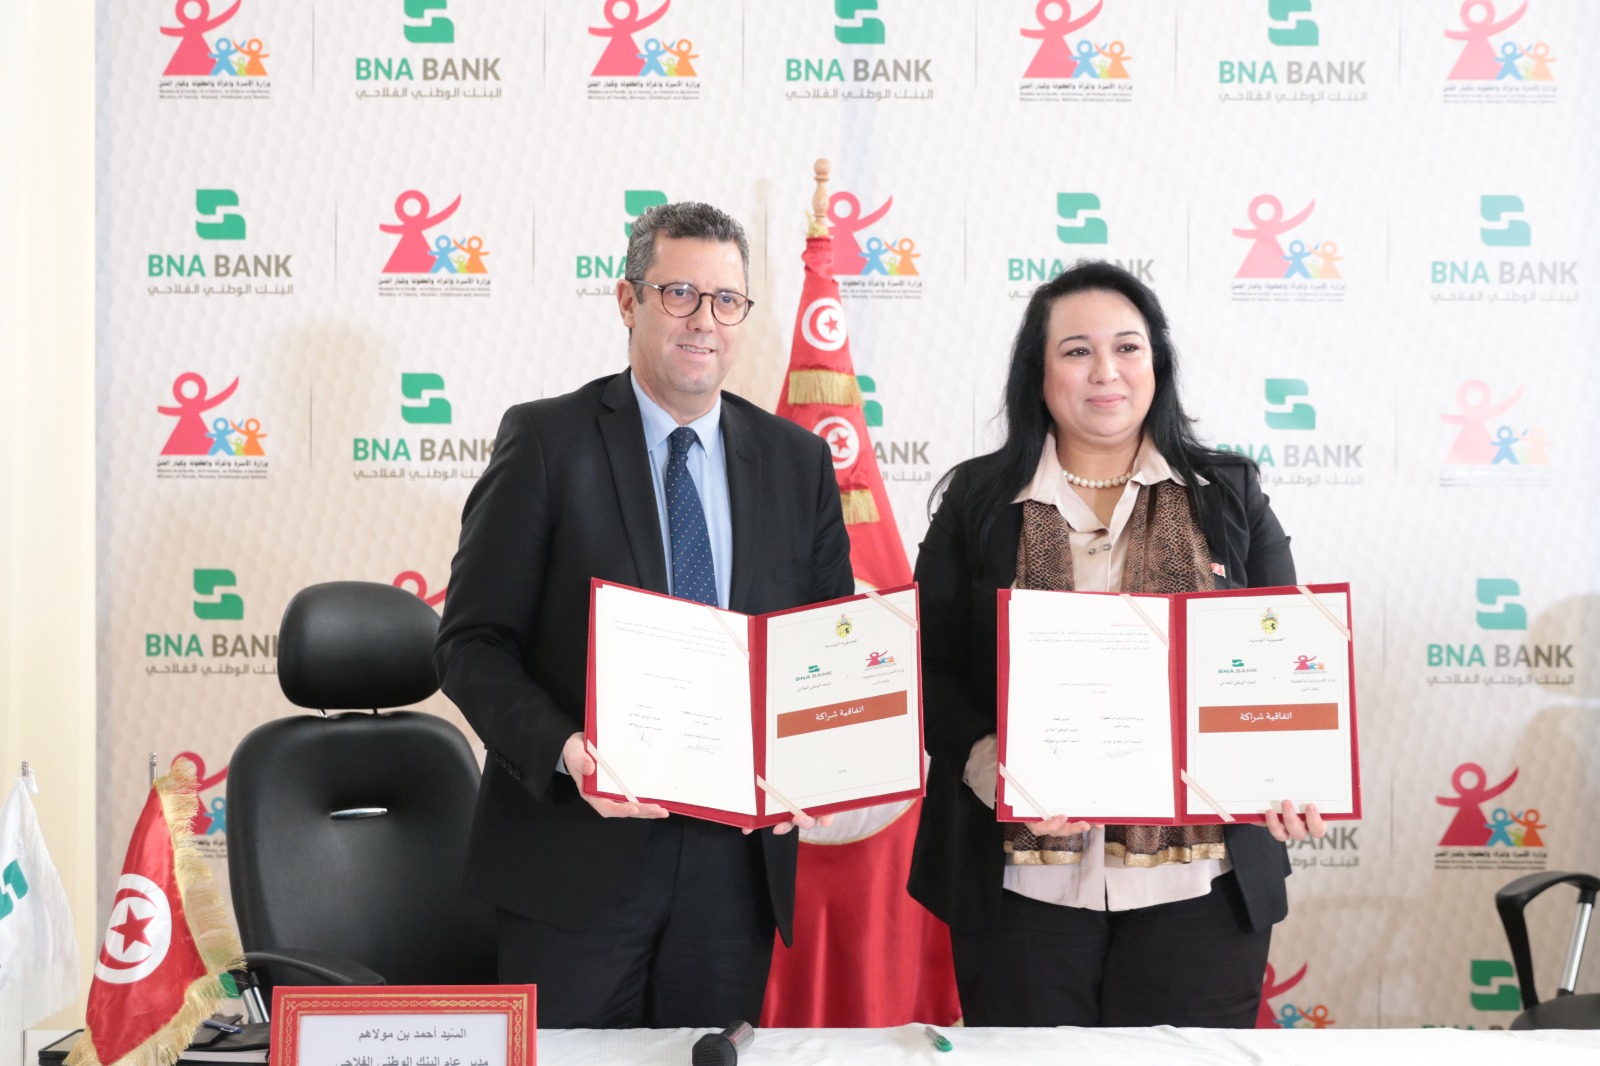  امضاء اتفاقية شراكة بين وزارة الأسرة والبنك الوطني الفلاحي حول صيانة مركّب الطفولة بحي التضامن 